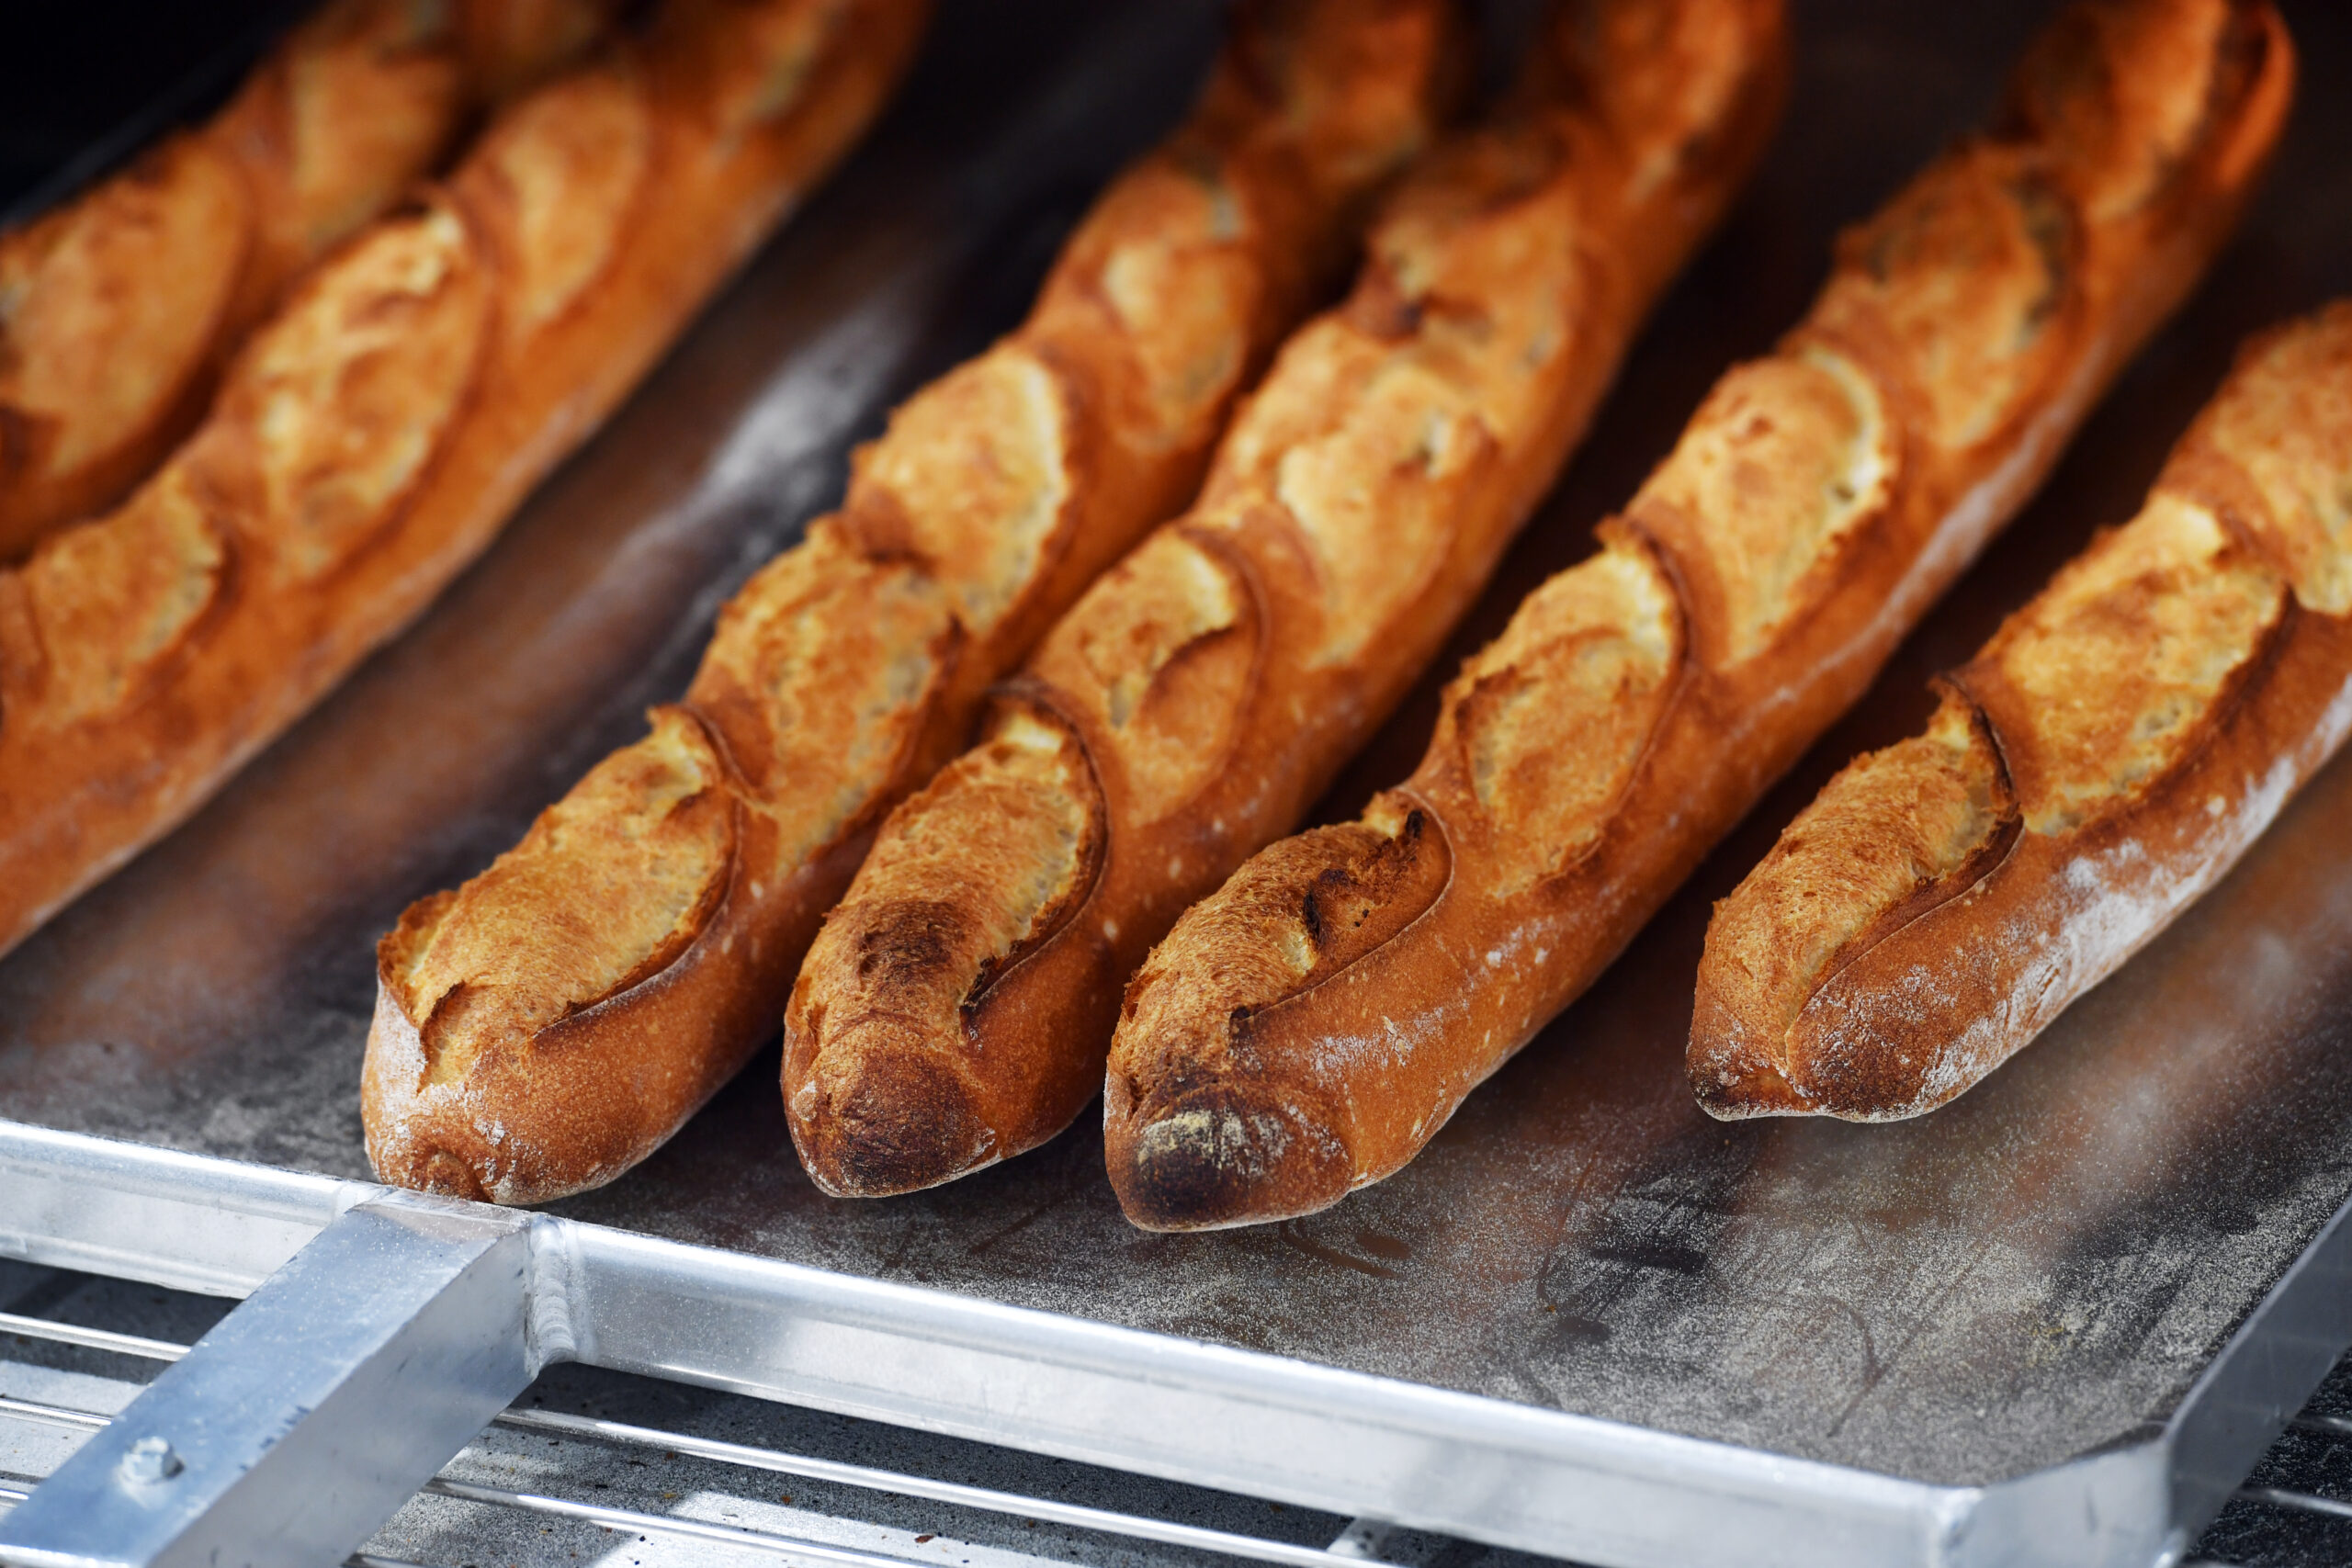 Sondage CNBPF/IFOP – Image du pain et de la boulangerie auprès des Français